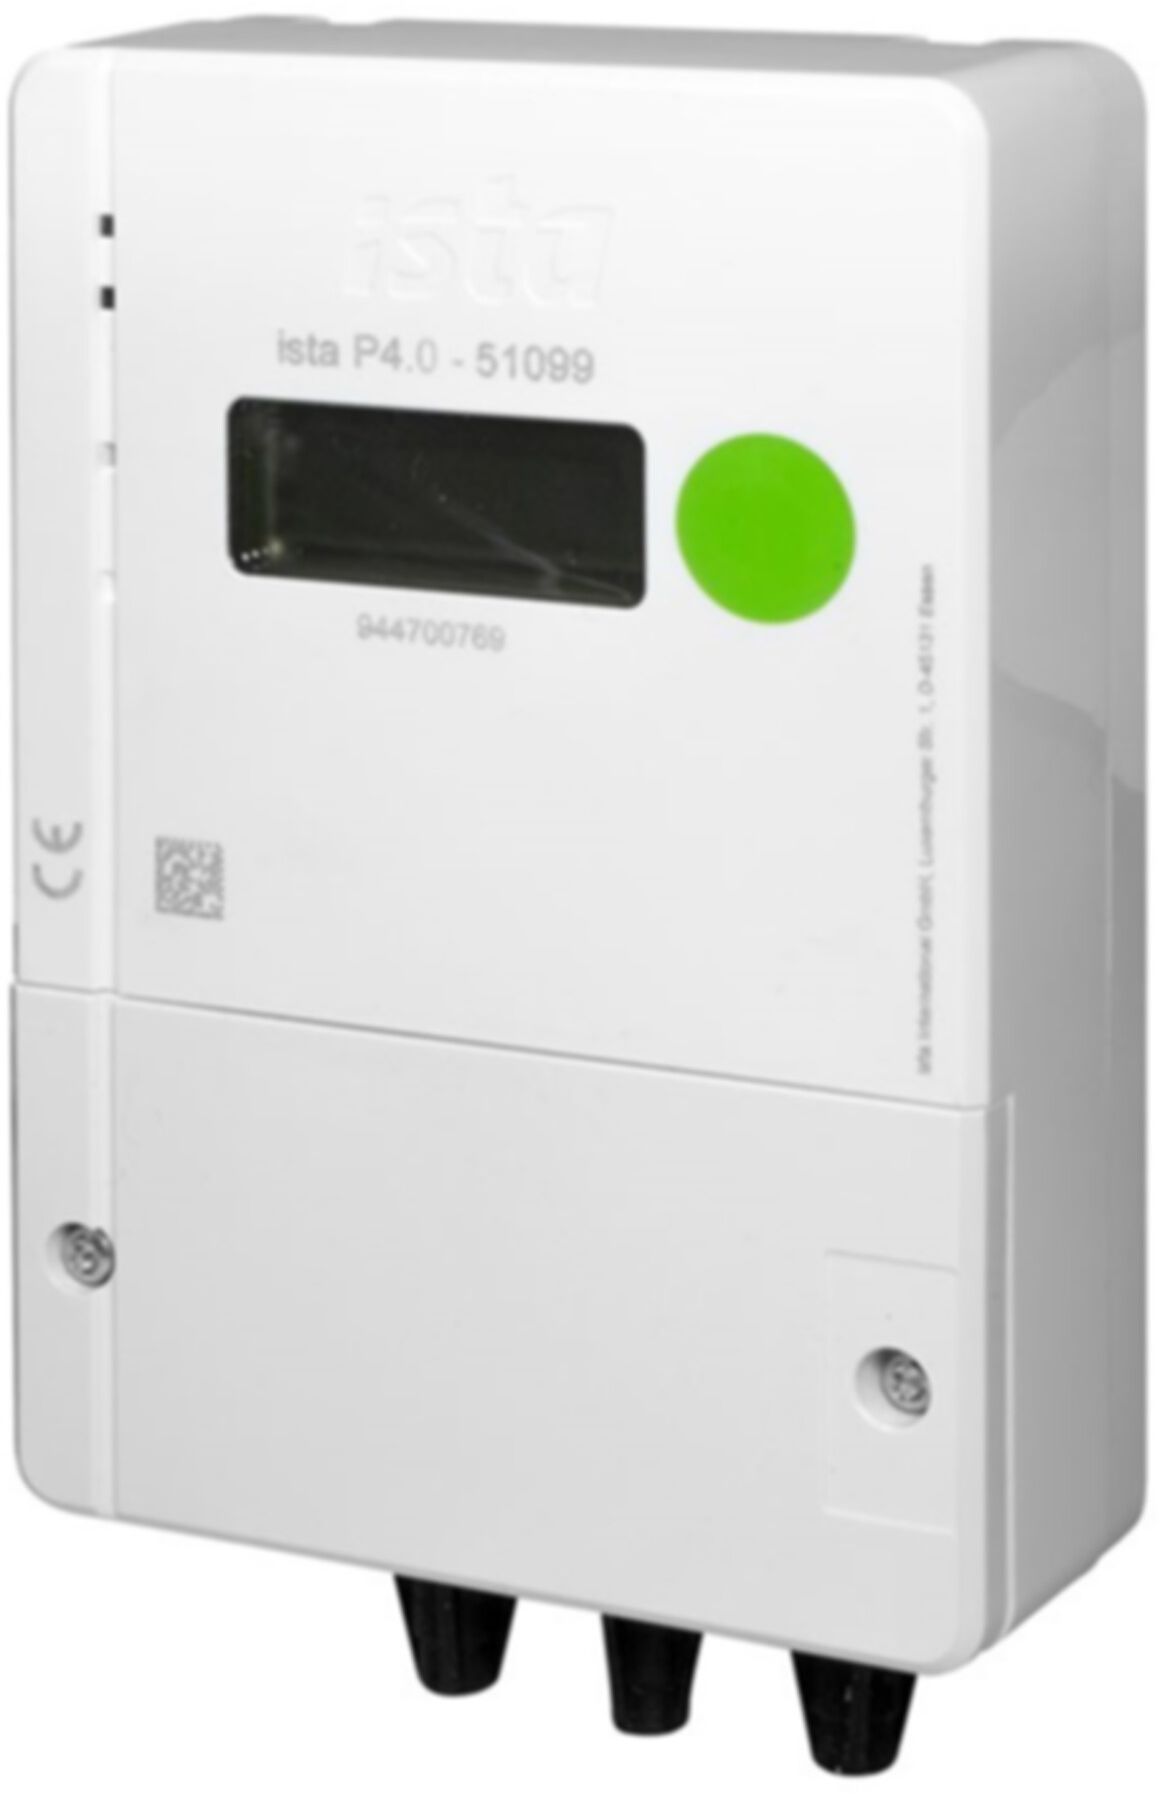 Pulszähler puslonic+ P4.0 51099 zu Hauswasserzähler (nicht für warm Fallrohr) - ISTA - Wärme- / Wasserzähler